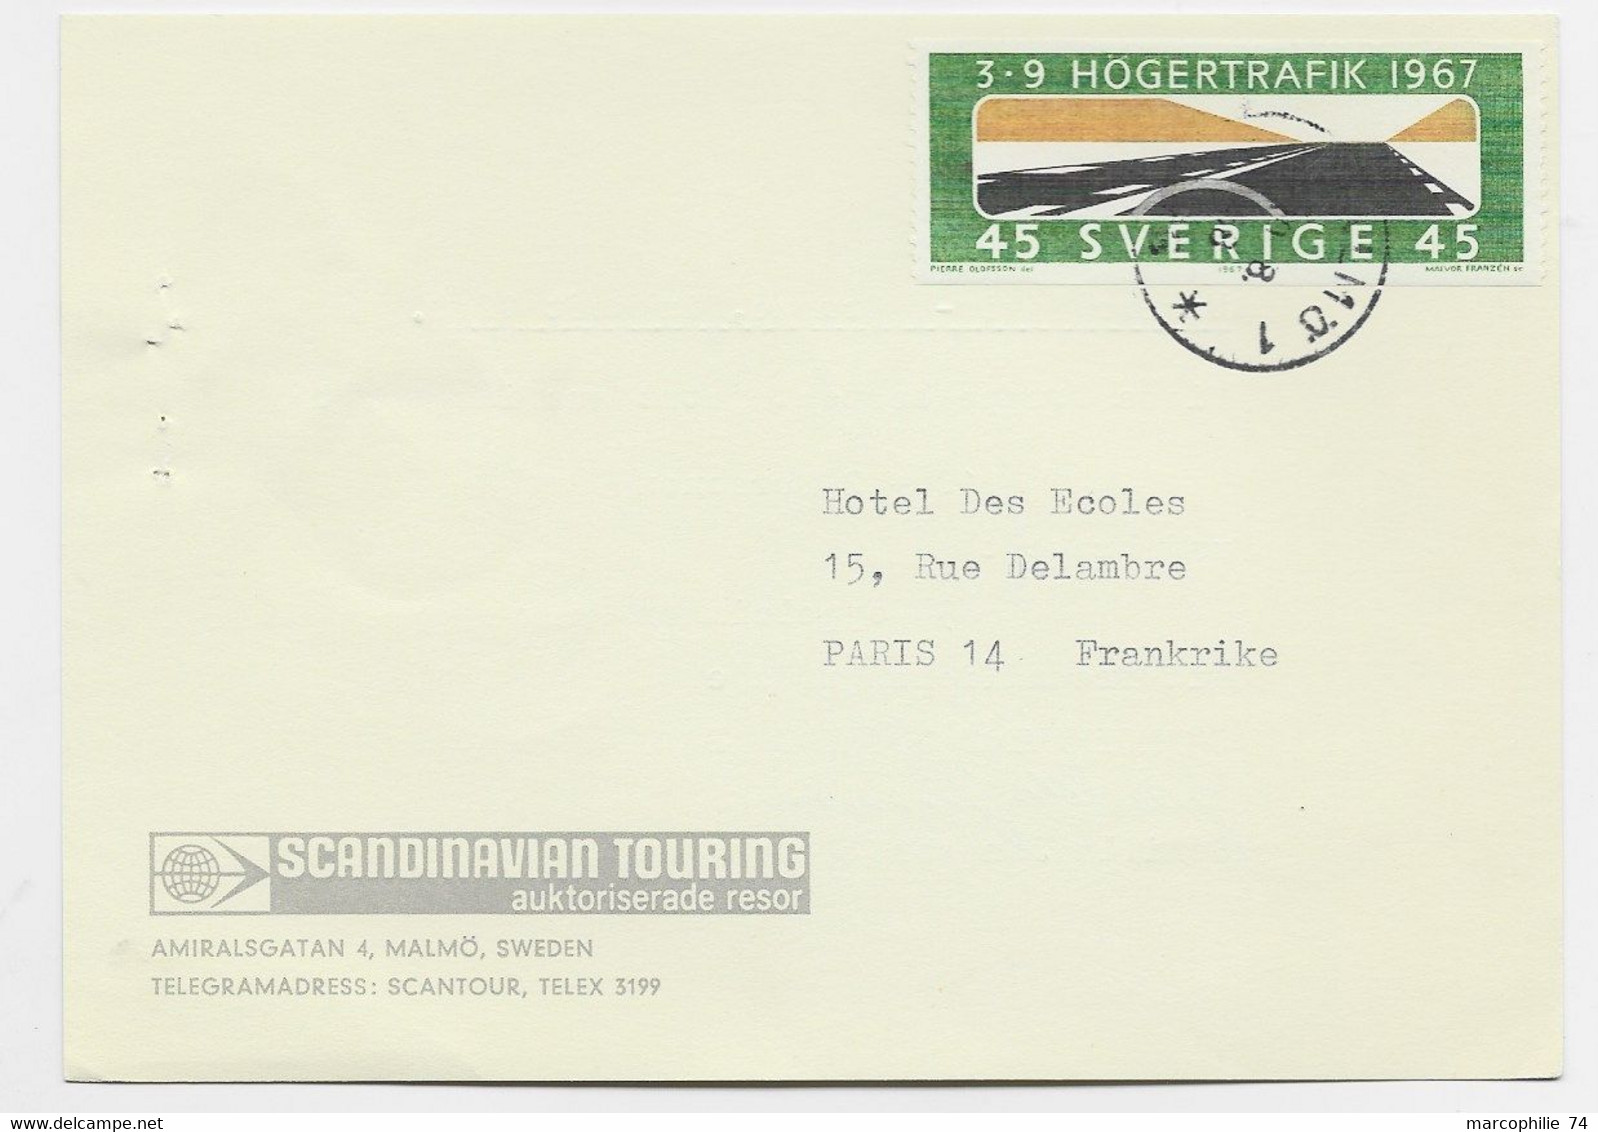 SVERIGE 45 SOLO CARD SCANDINAVIAN TOURING 1967 O FRANCE - Brieven En Documenten